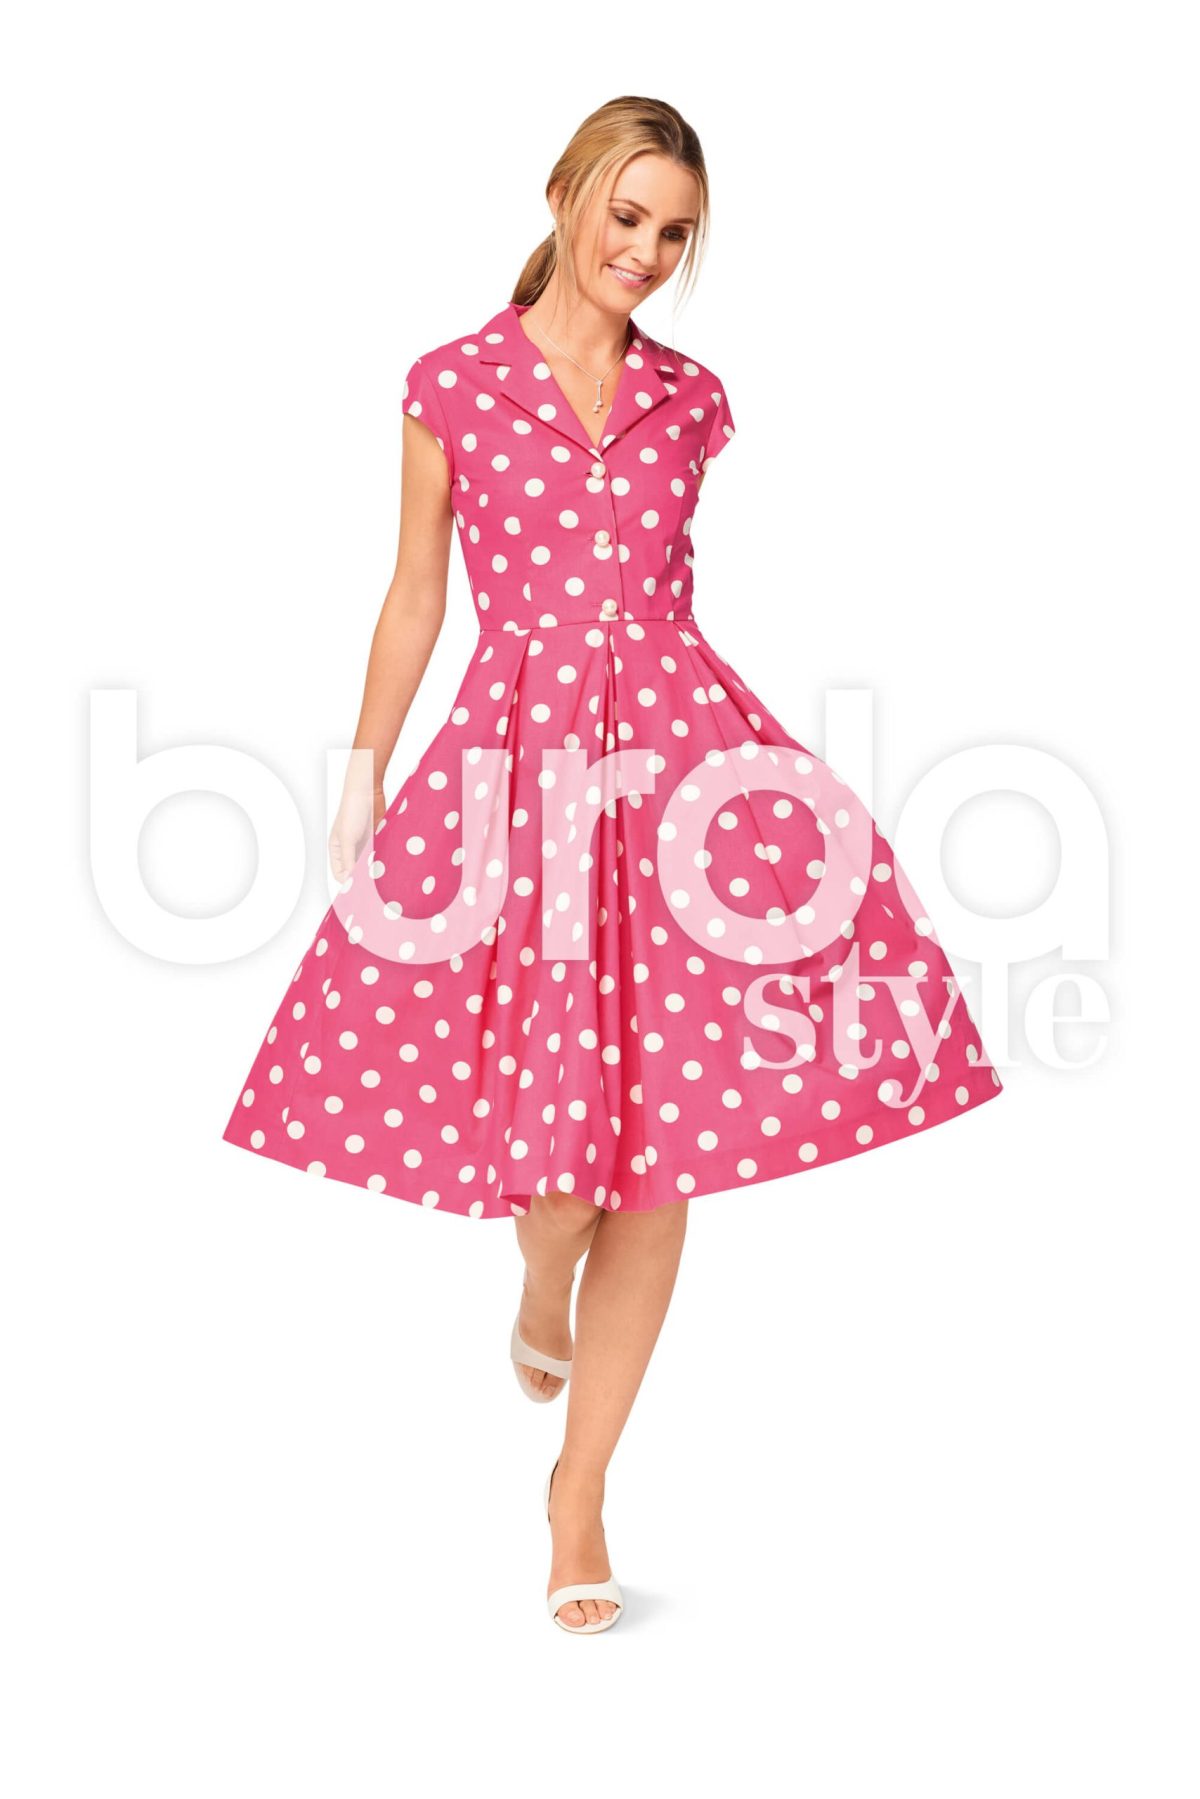 Burda Style Pattern B6520 Women's' Dress, Blouse and Skirt